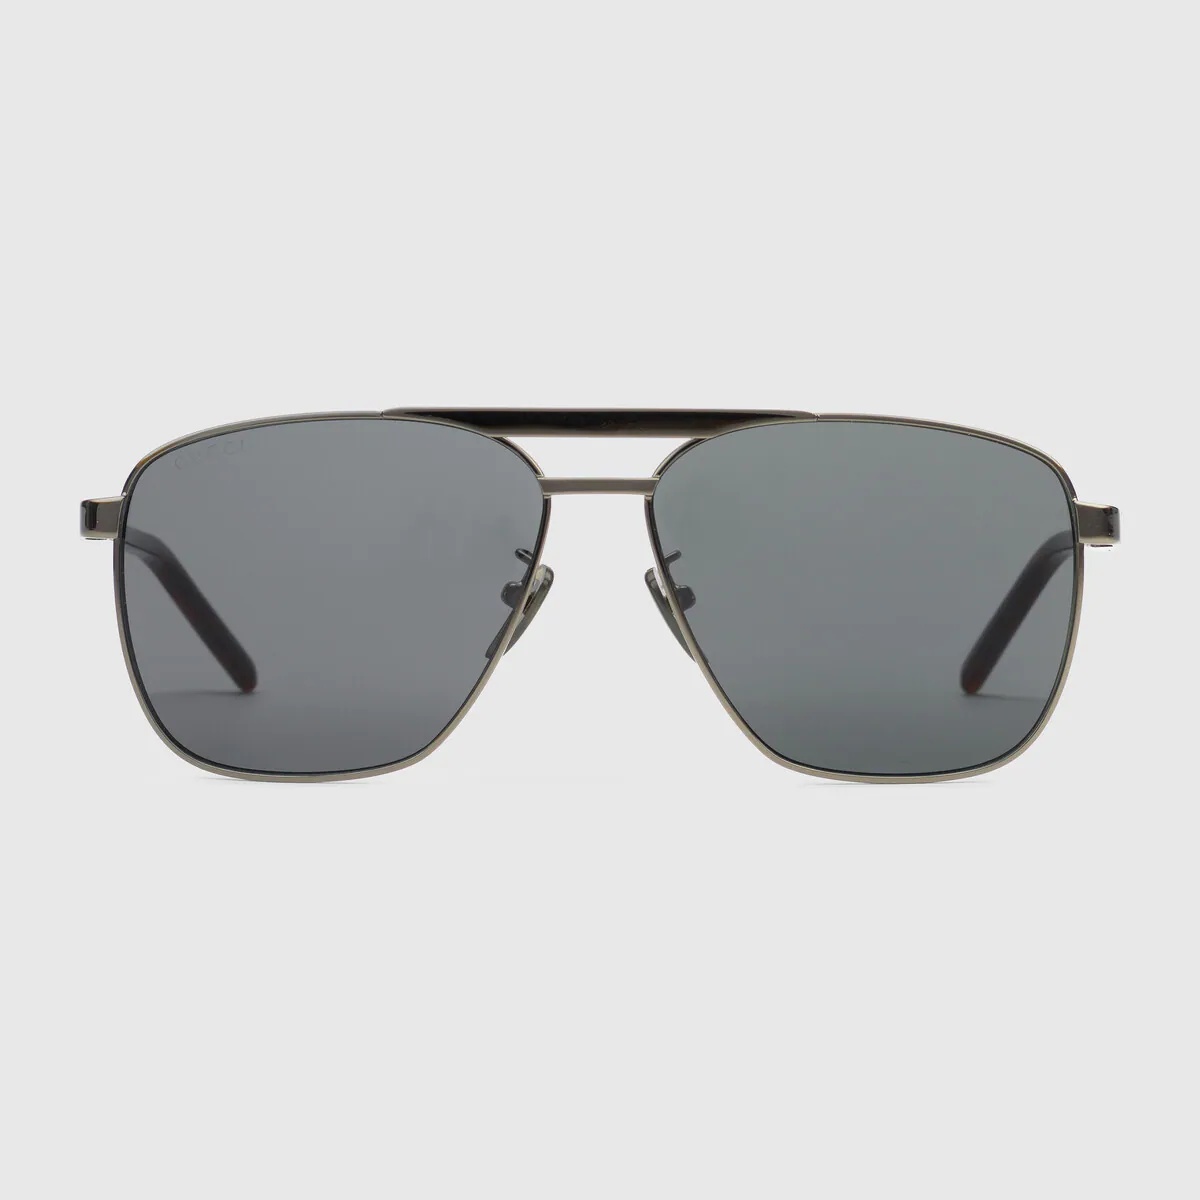 Navigator-frame sunglasses - 1